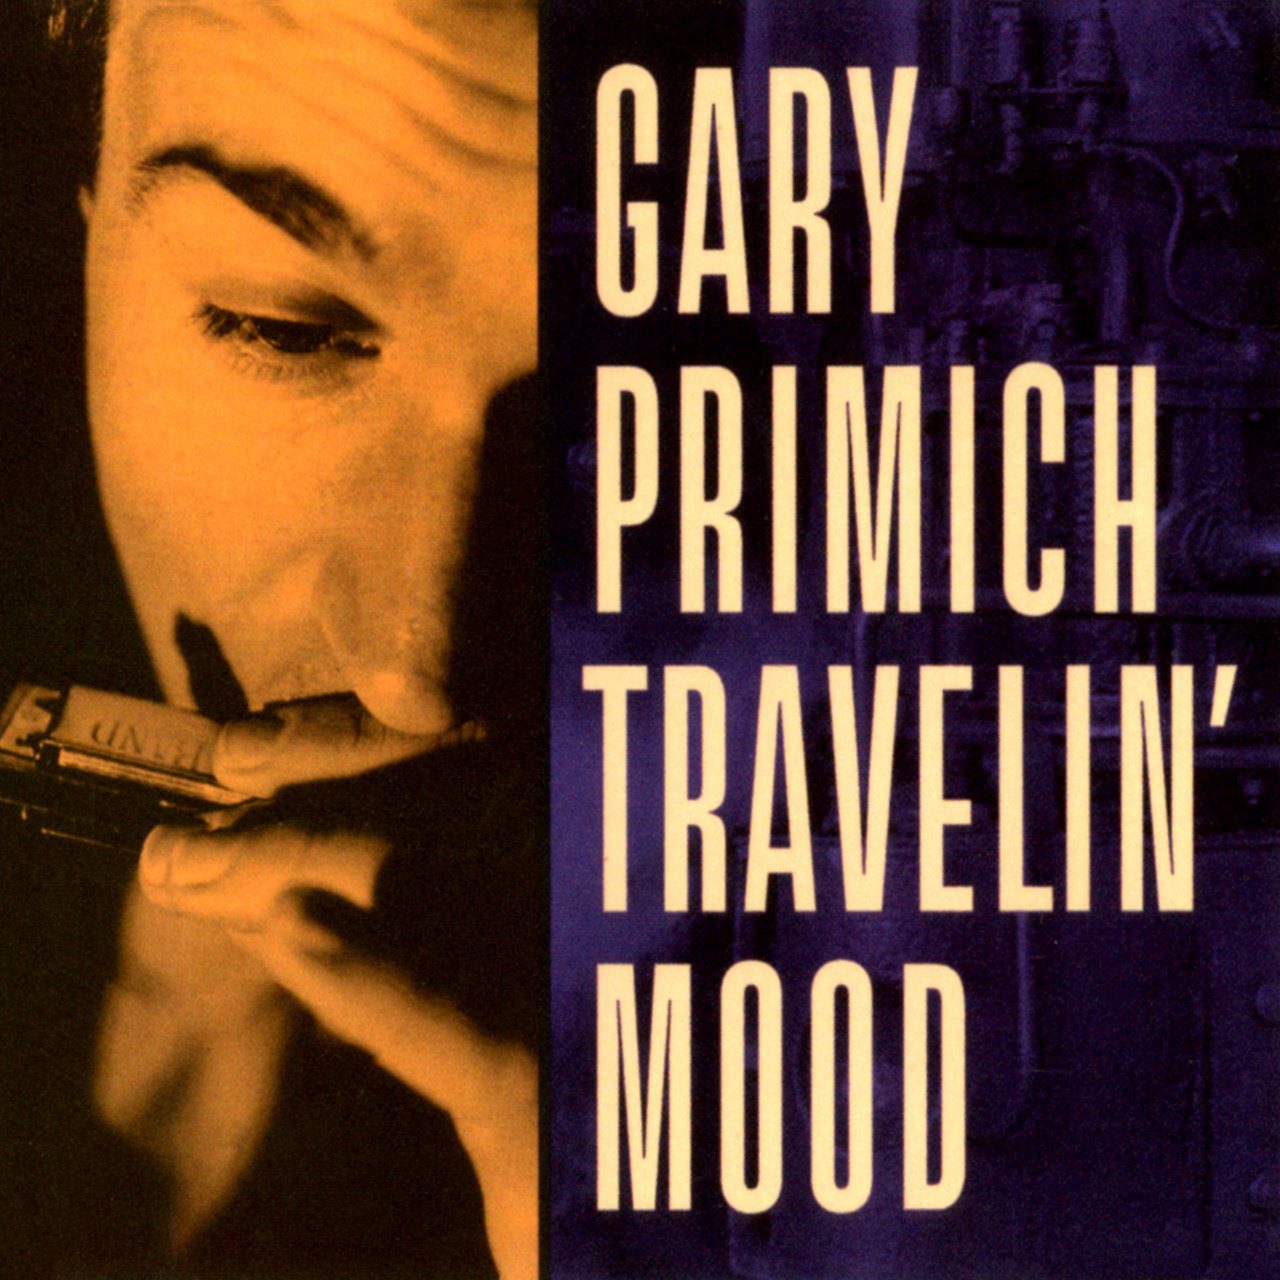 Gary Primich – Travelin’ Mood cover album